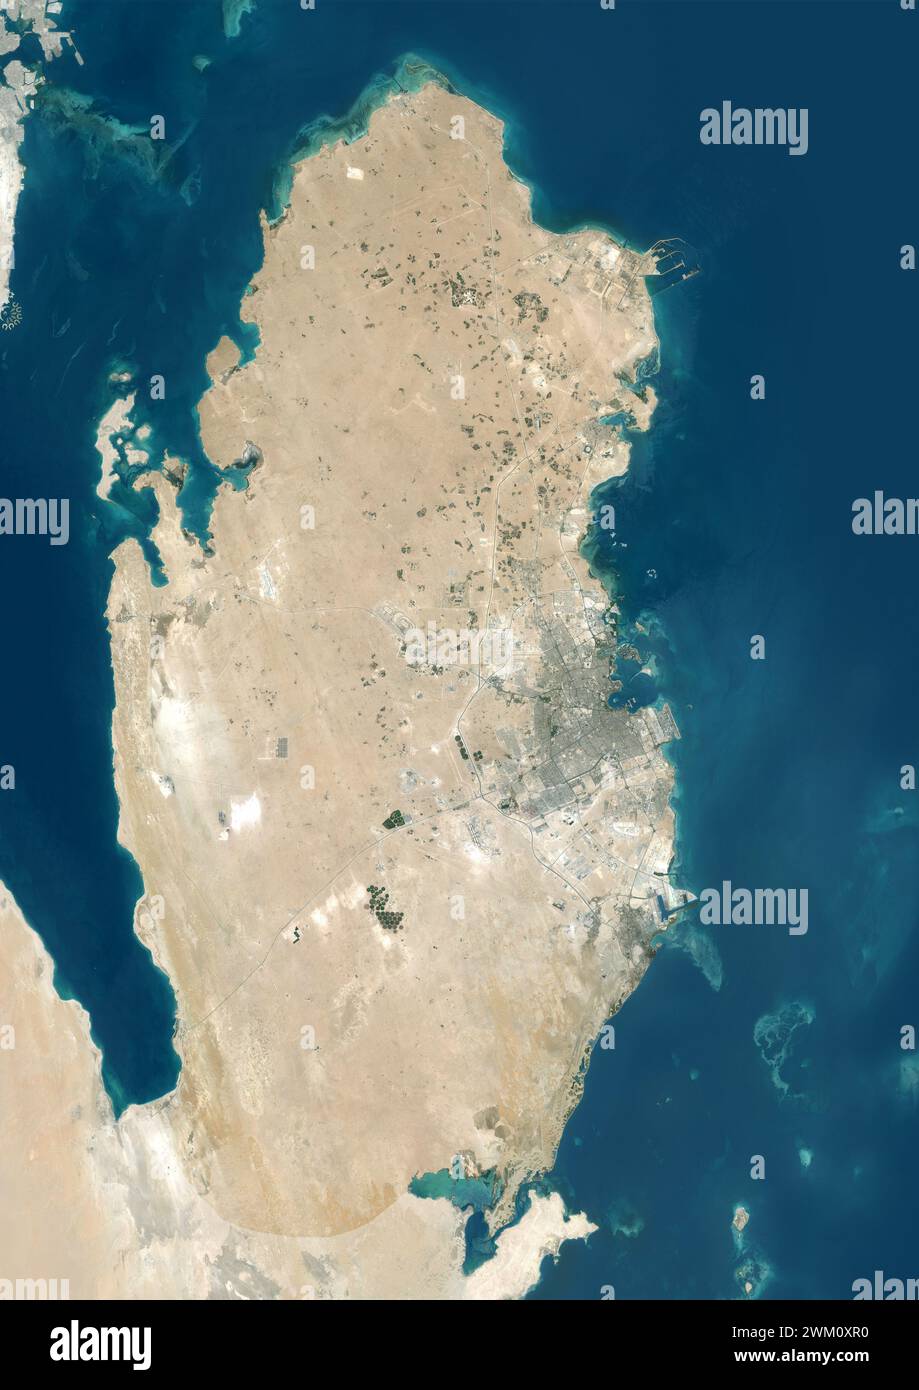 Immagine satellitare a colori del Qatar, con maschera. Foto Stock